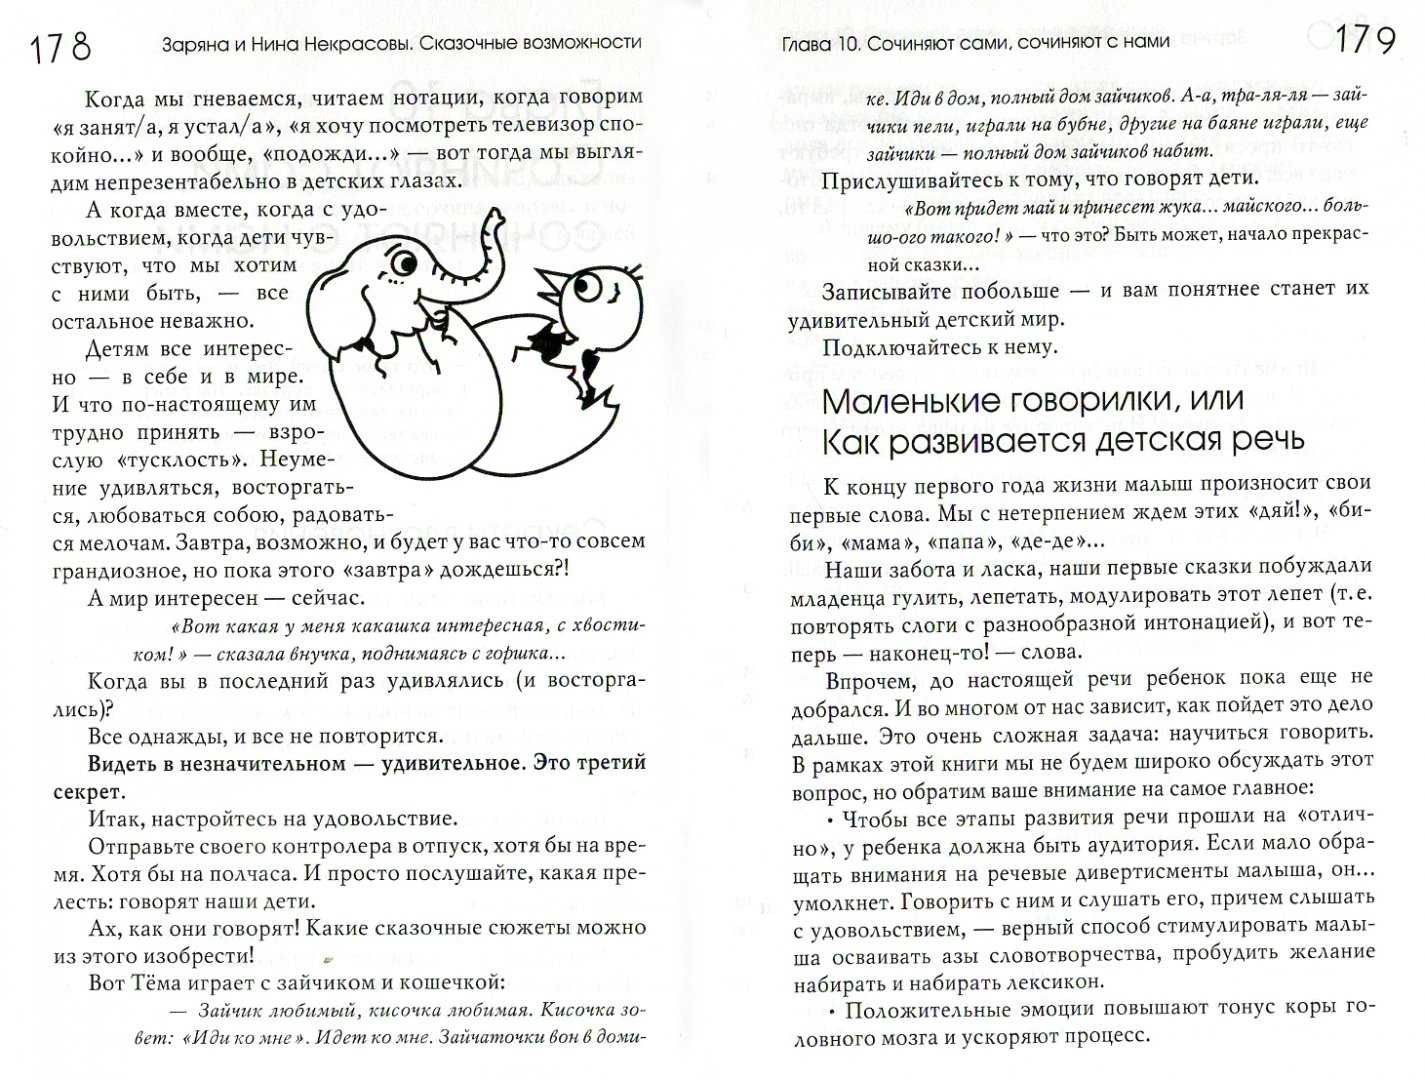 Творчество н.а. некрасова детям. русская природа в стихах